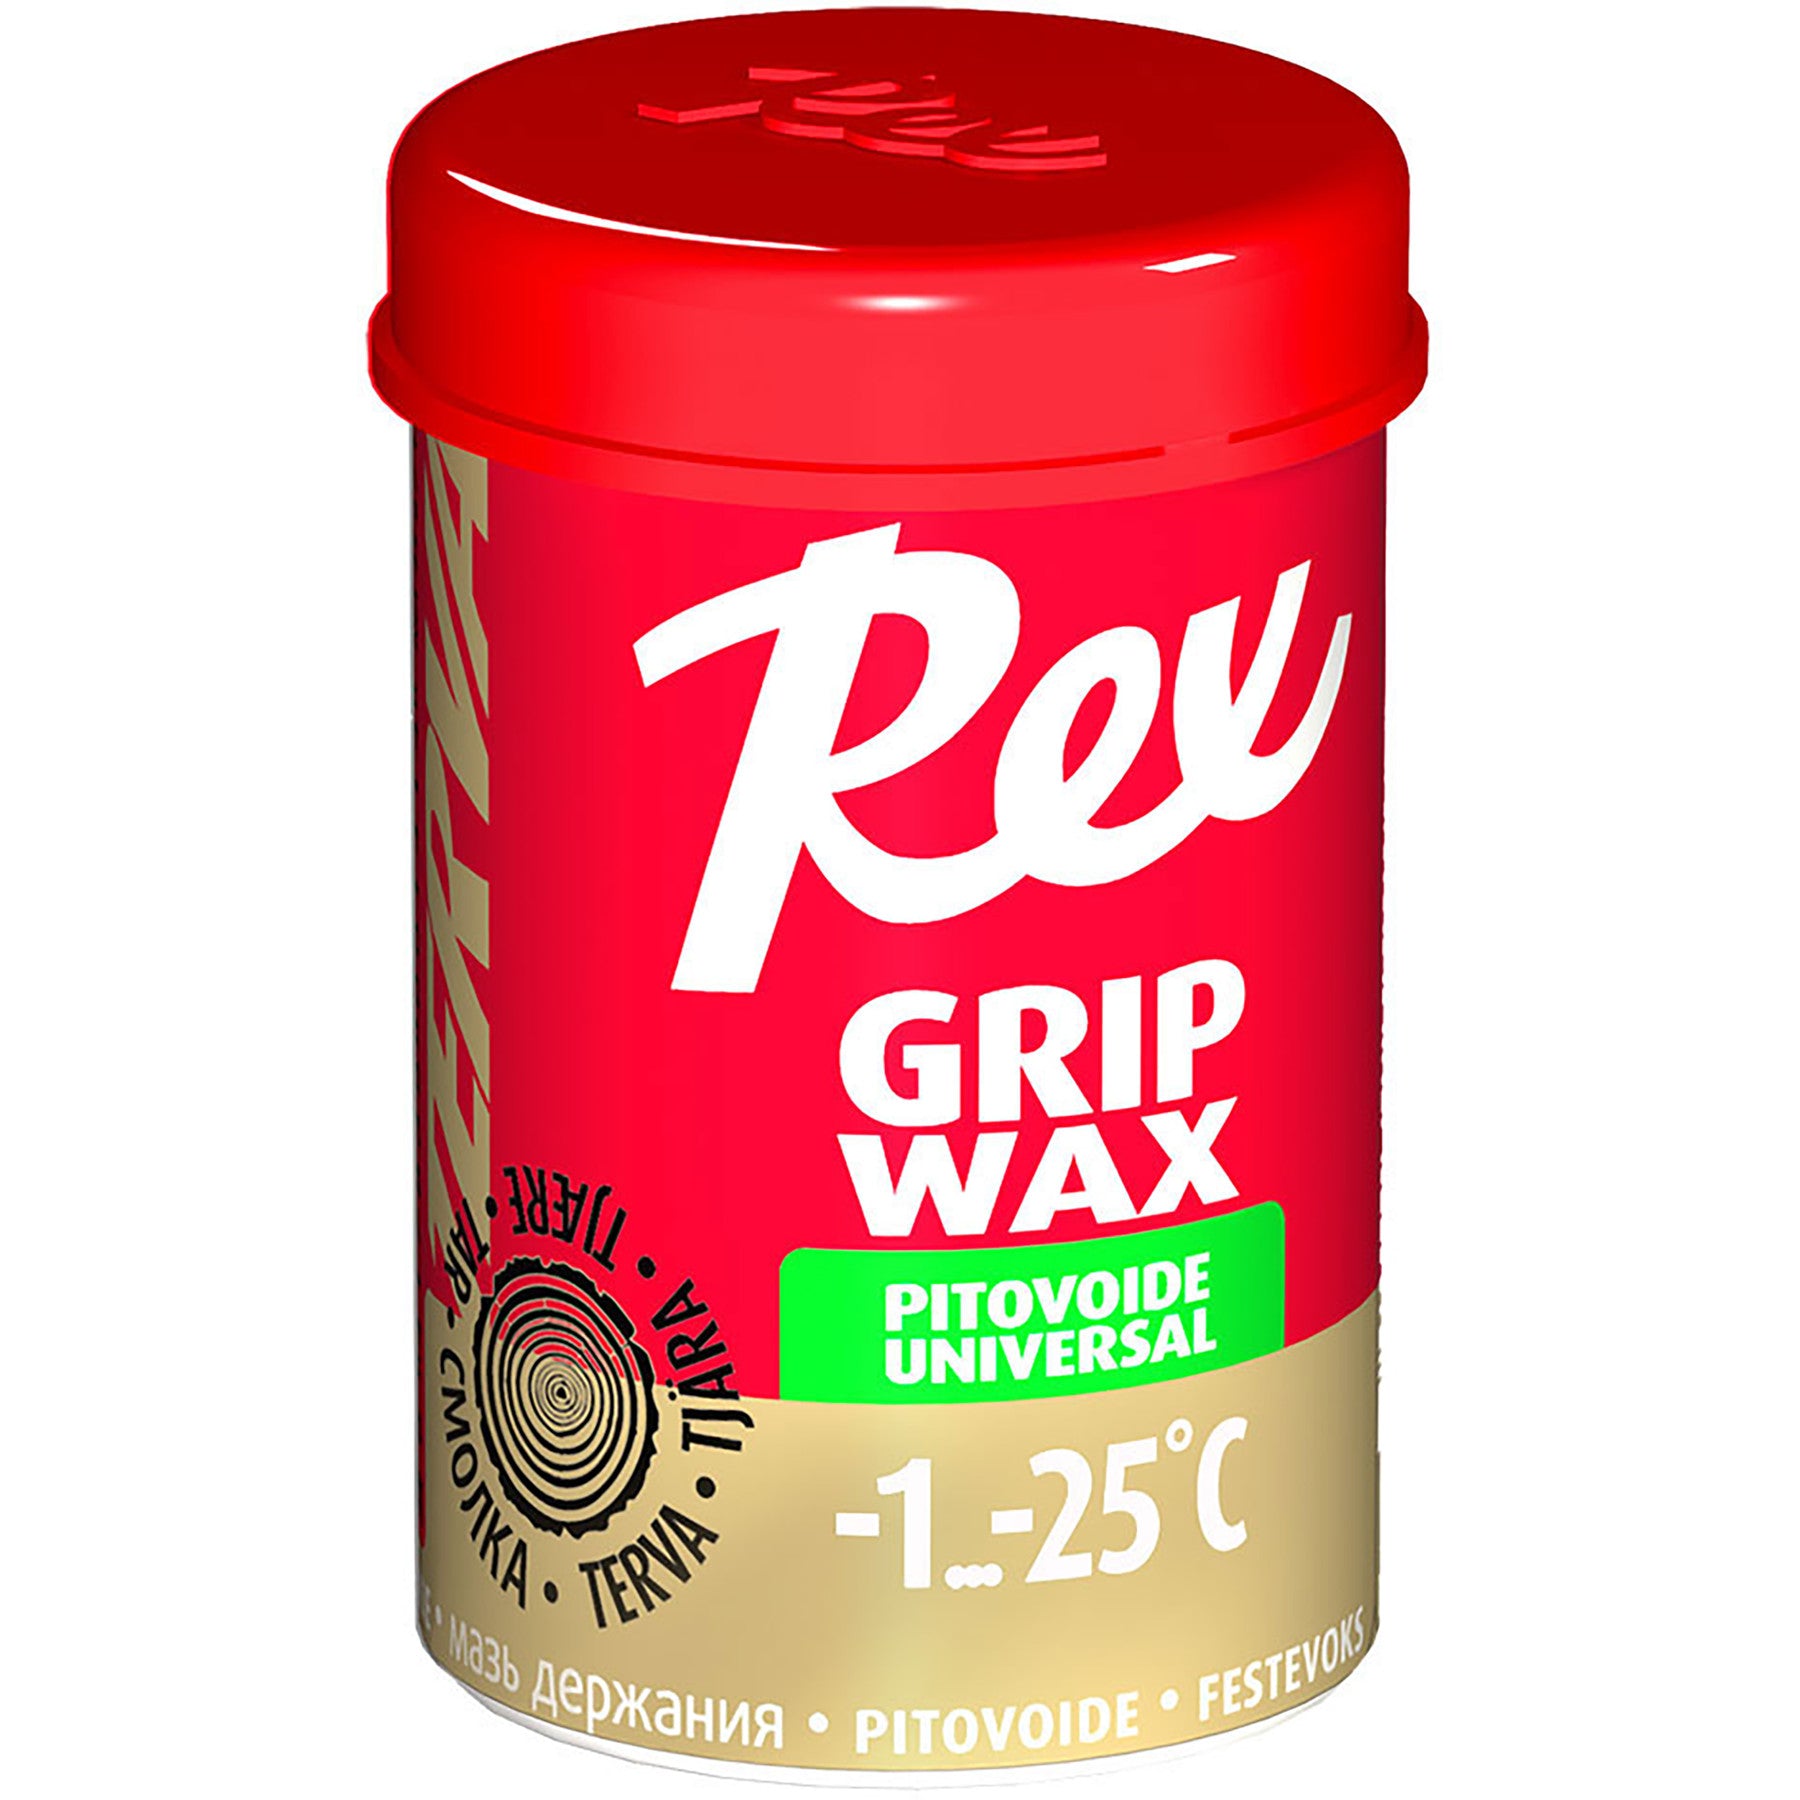 Rex Grip Wax 45g